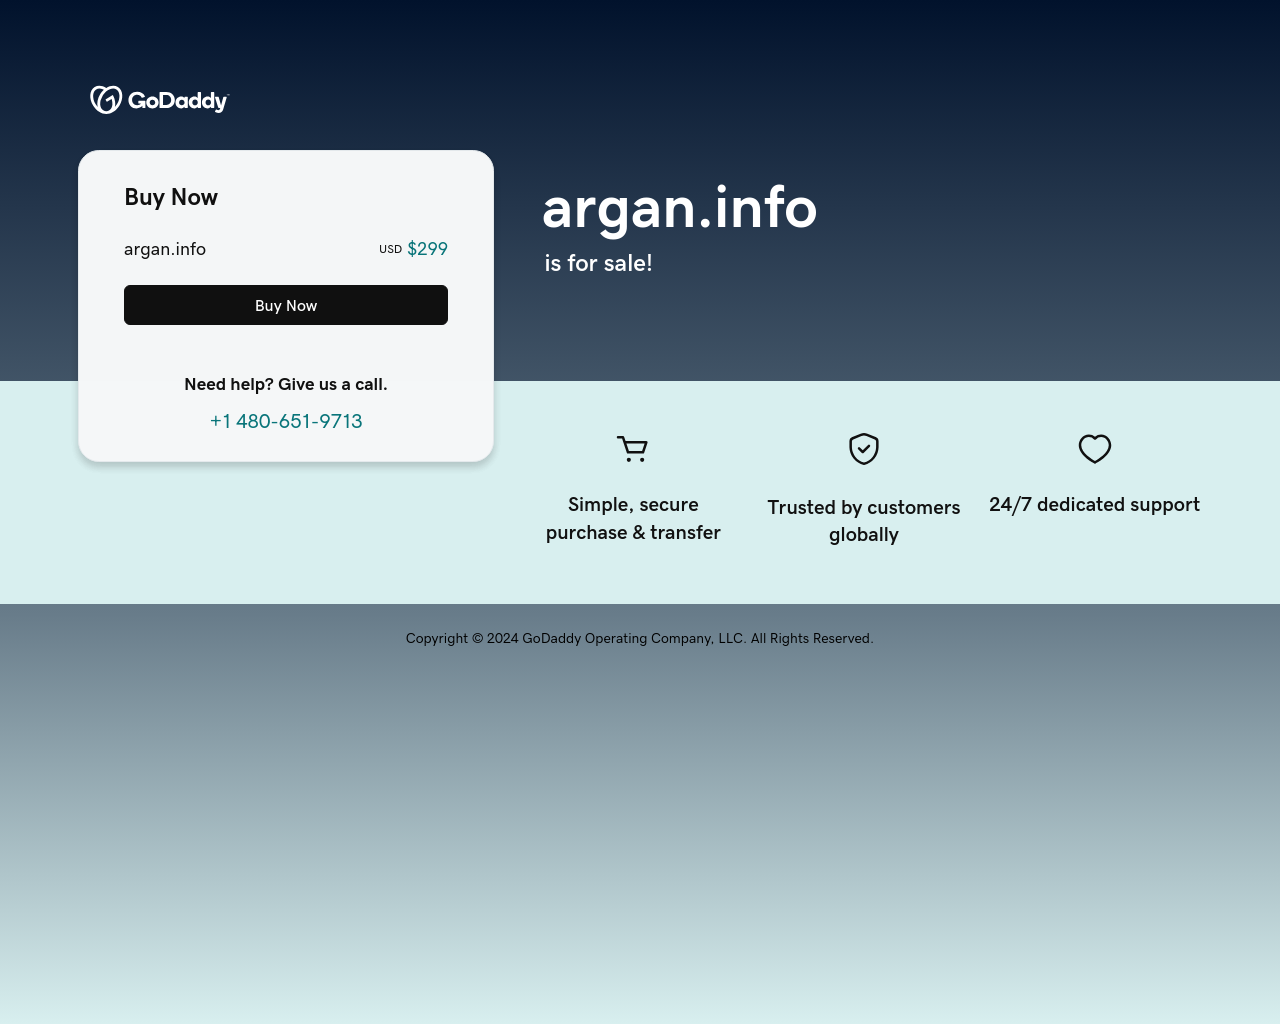 argan.info